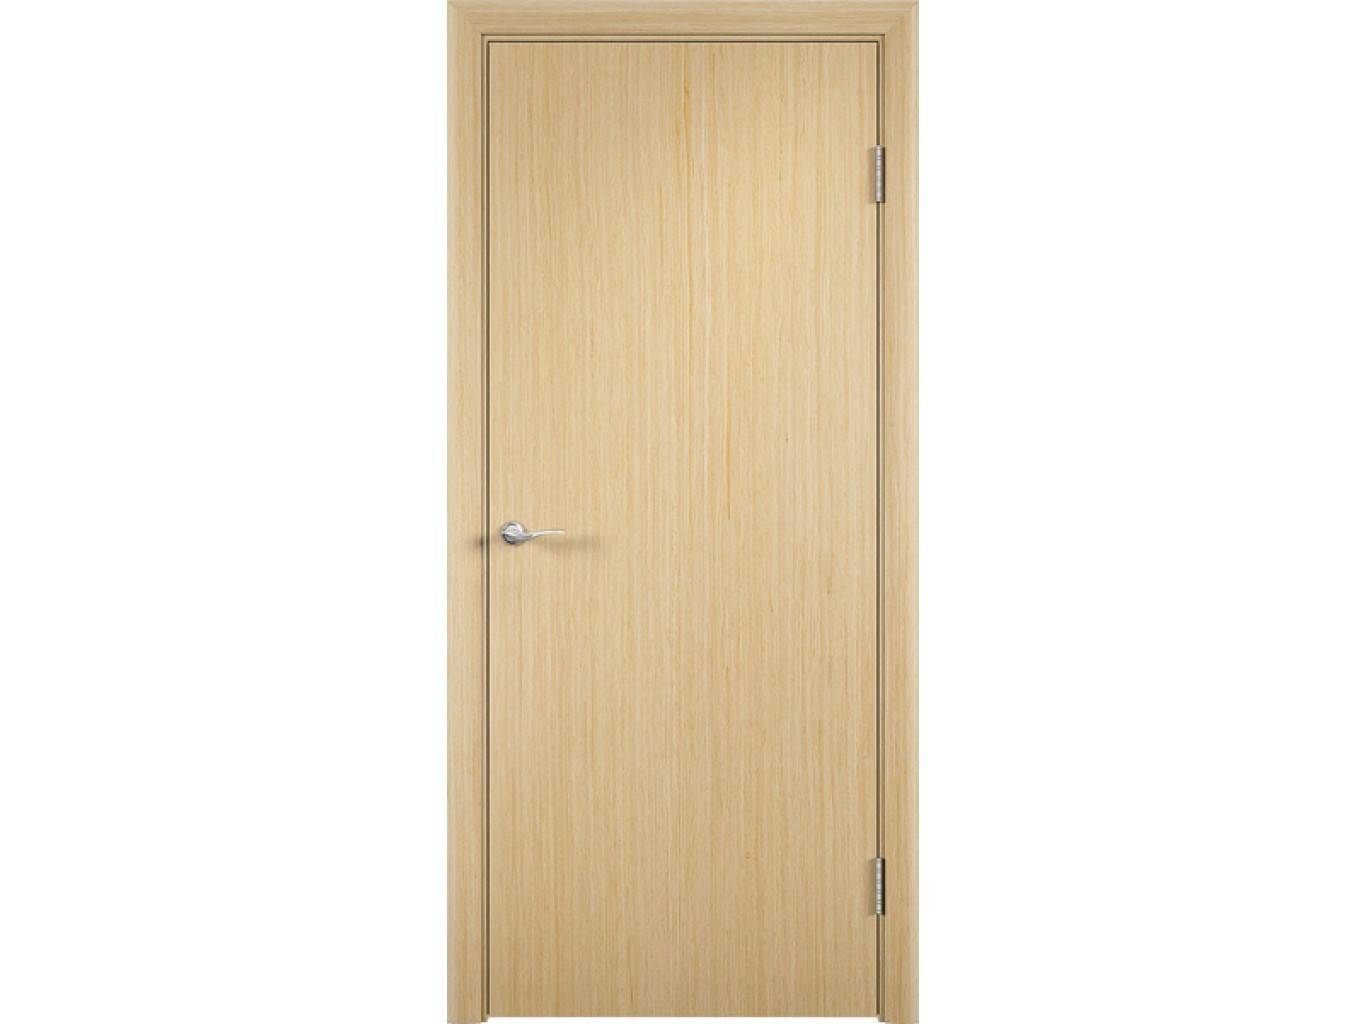 Что такое ламинированные двери - из чего они изготовлены и как выбрать правильно?